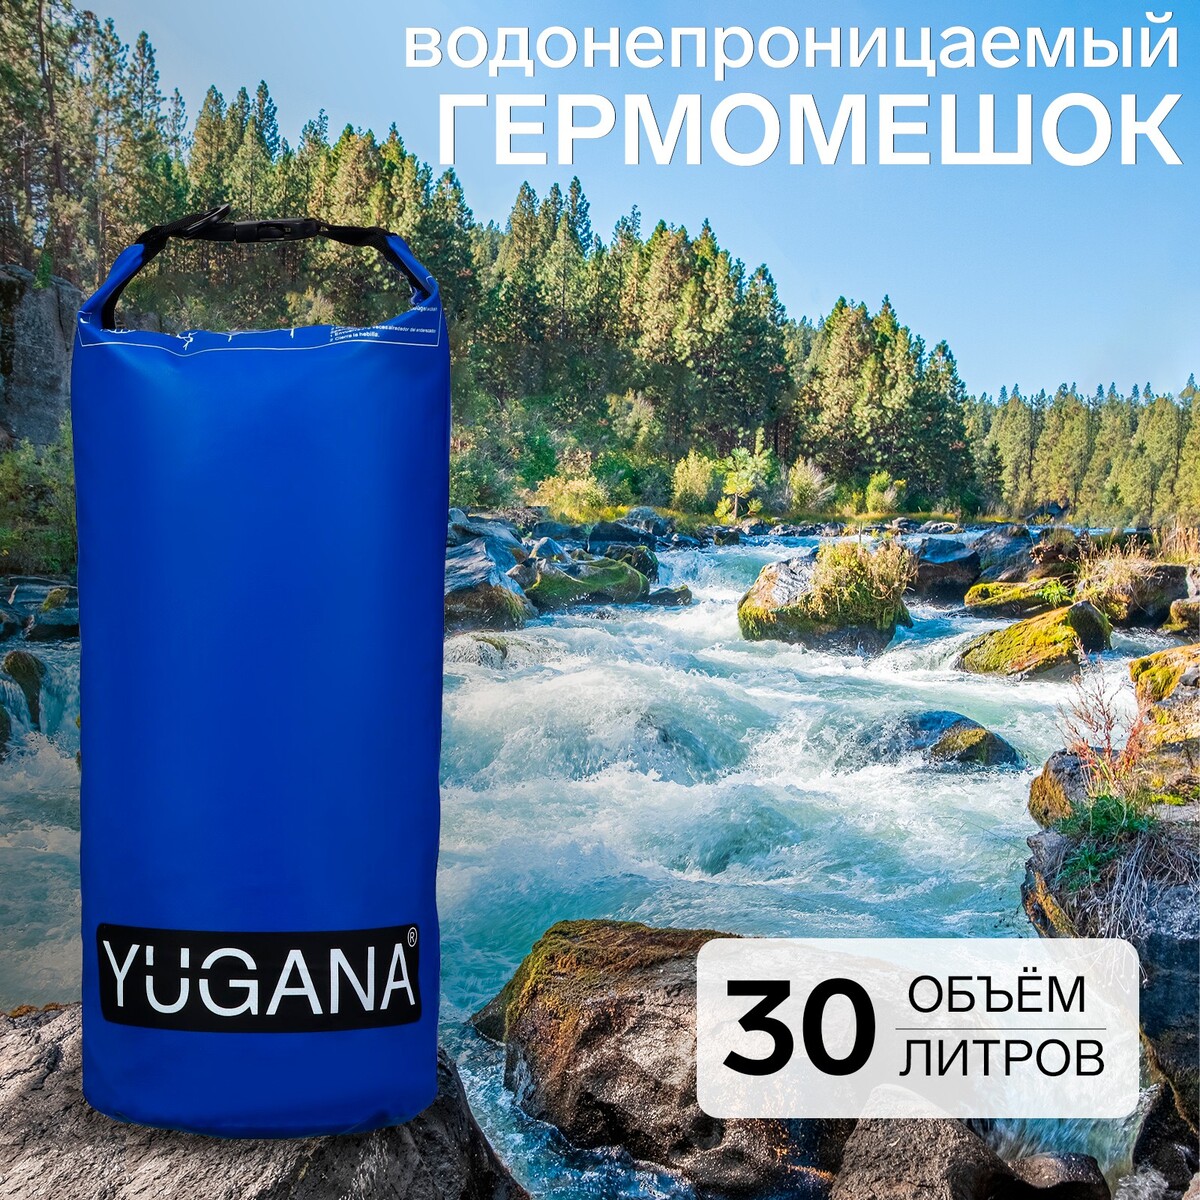 Гермомешок yugana, пвх, водонепроницаемый 30 литров, один ремень, синий термосумка на молнии 9 л длинный ремень синий